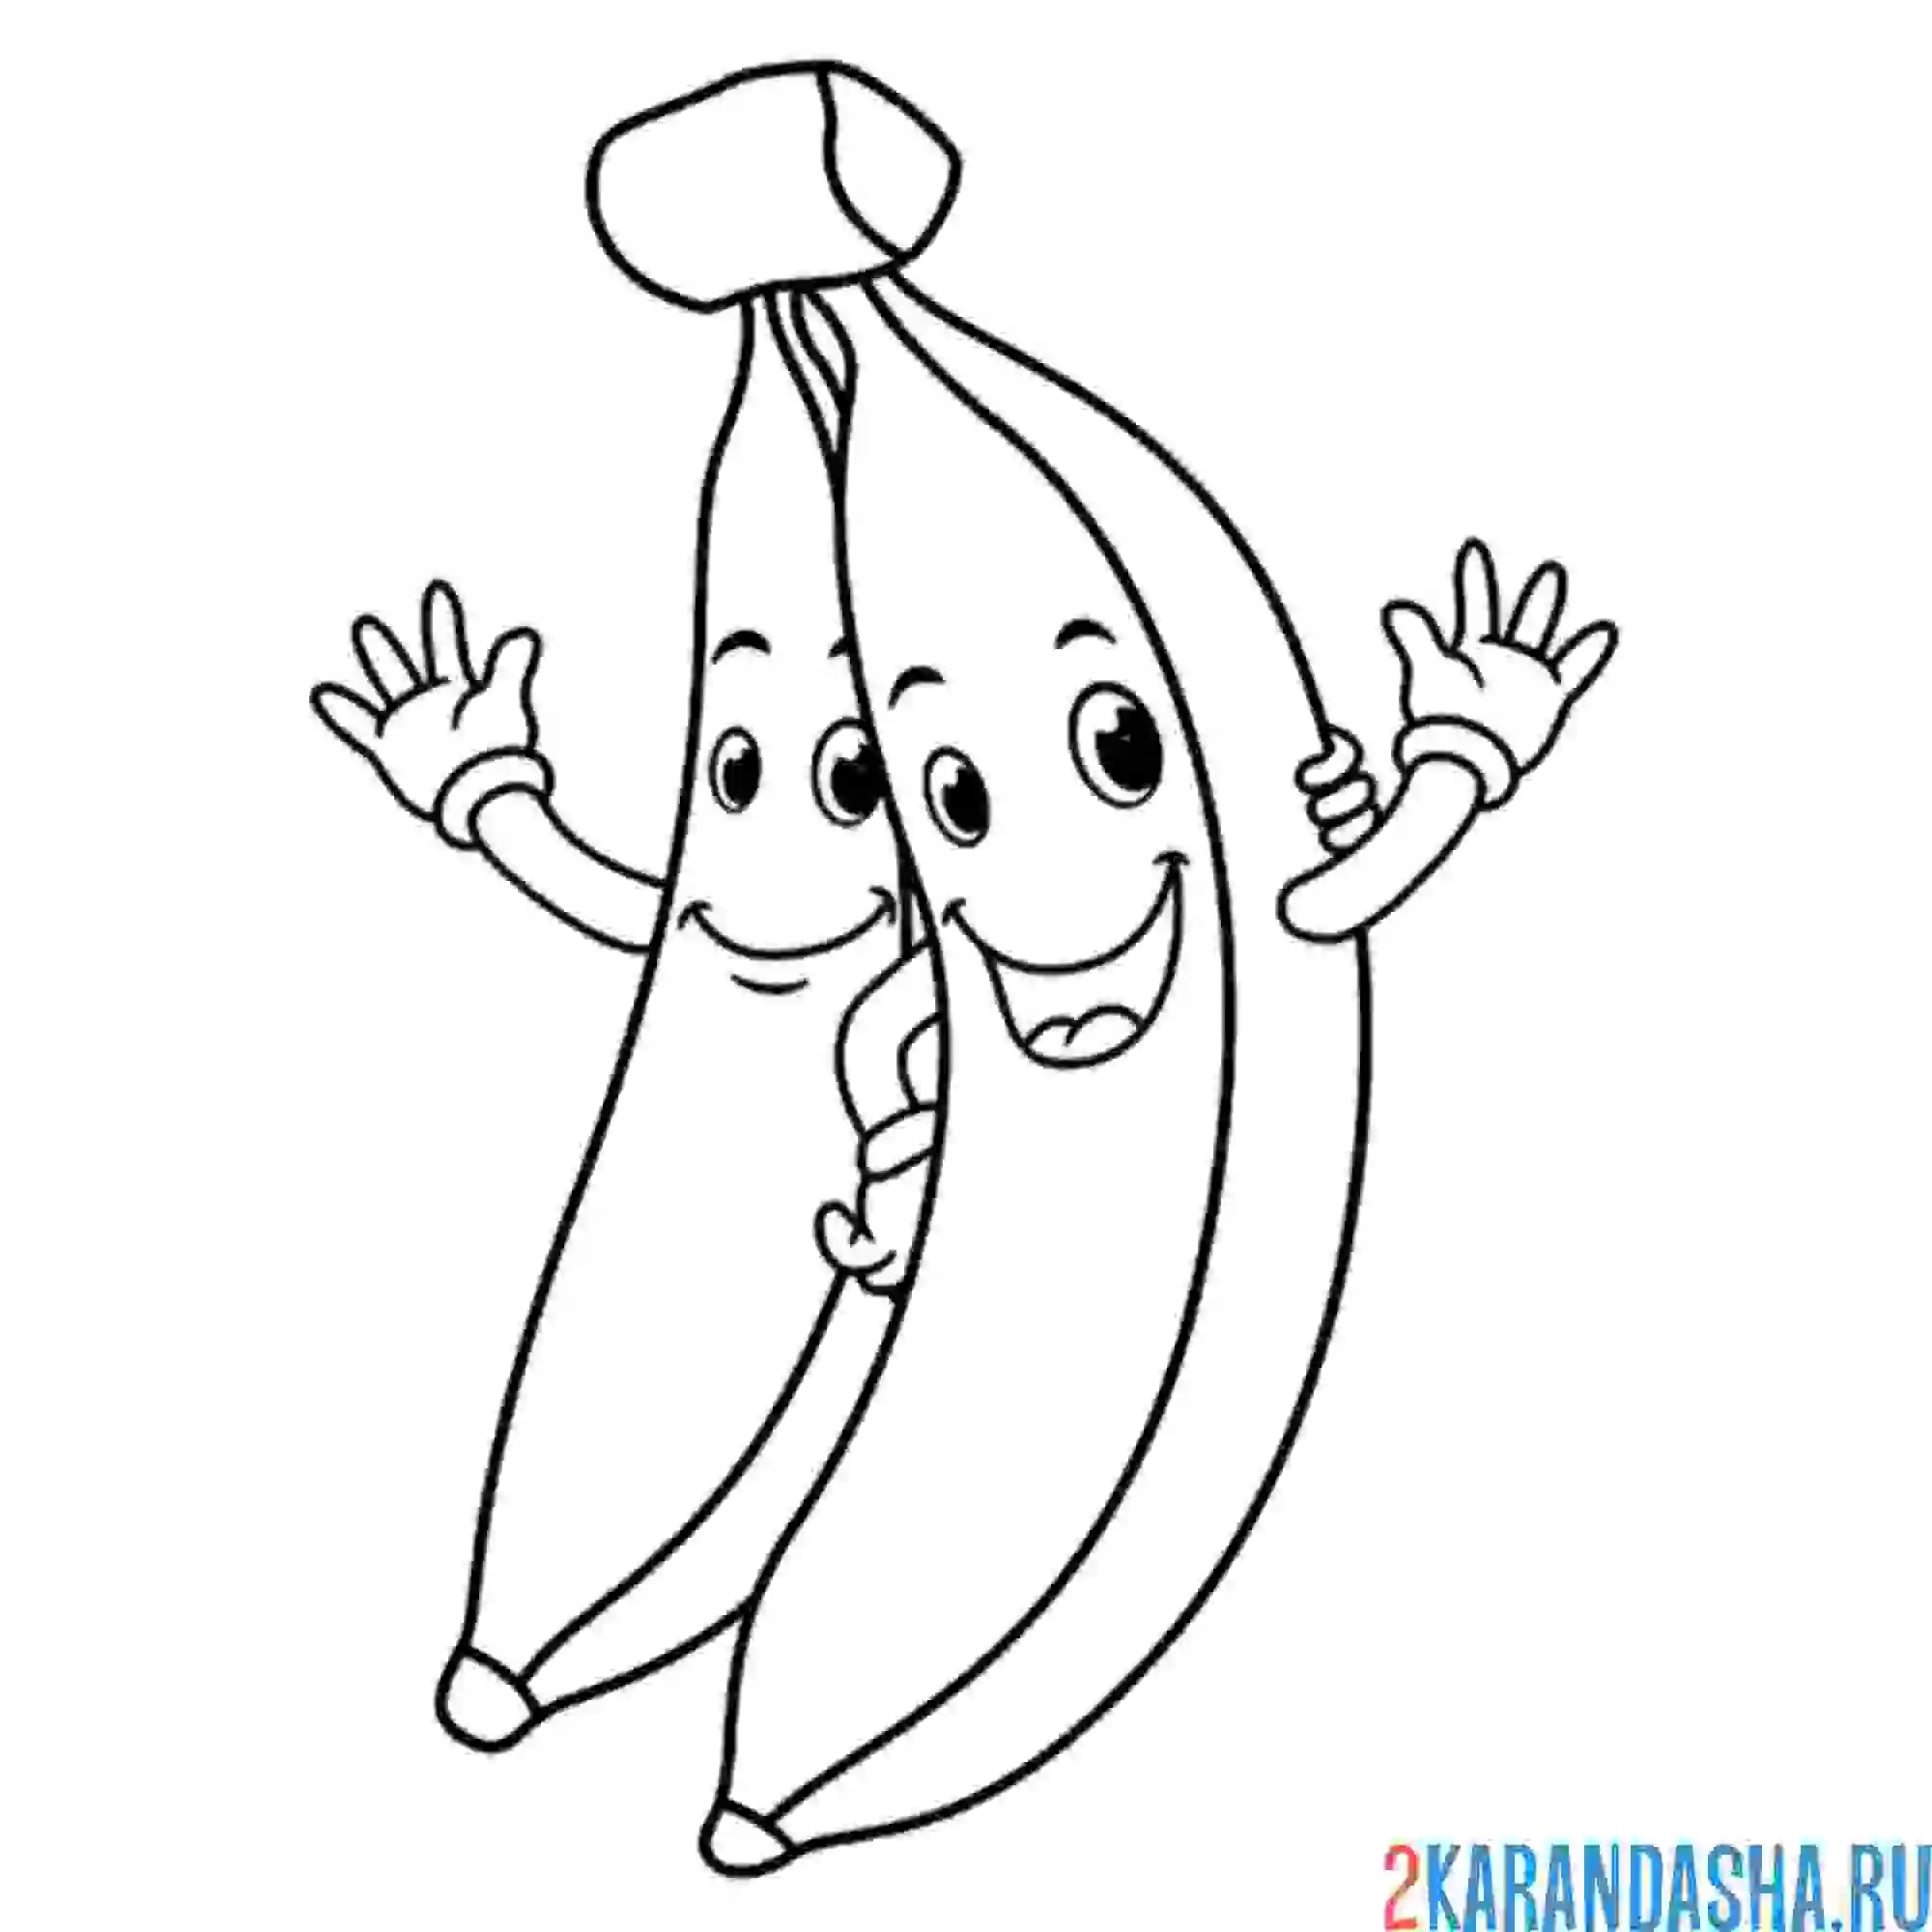 Раскраска два банана с глазками